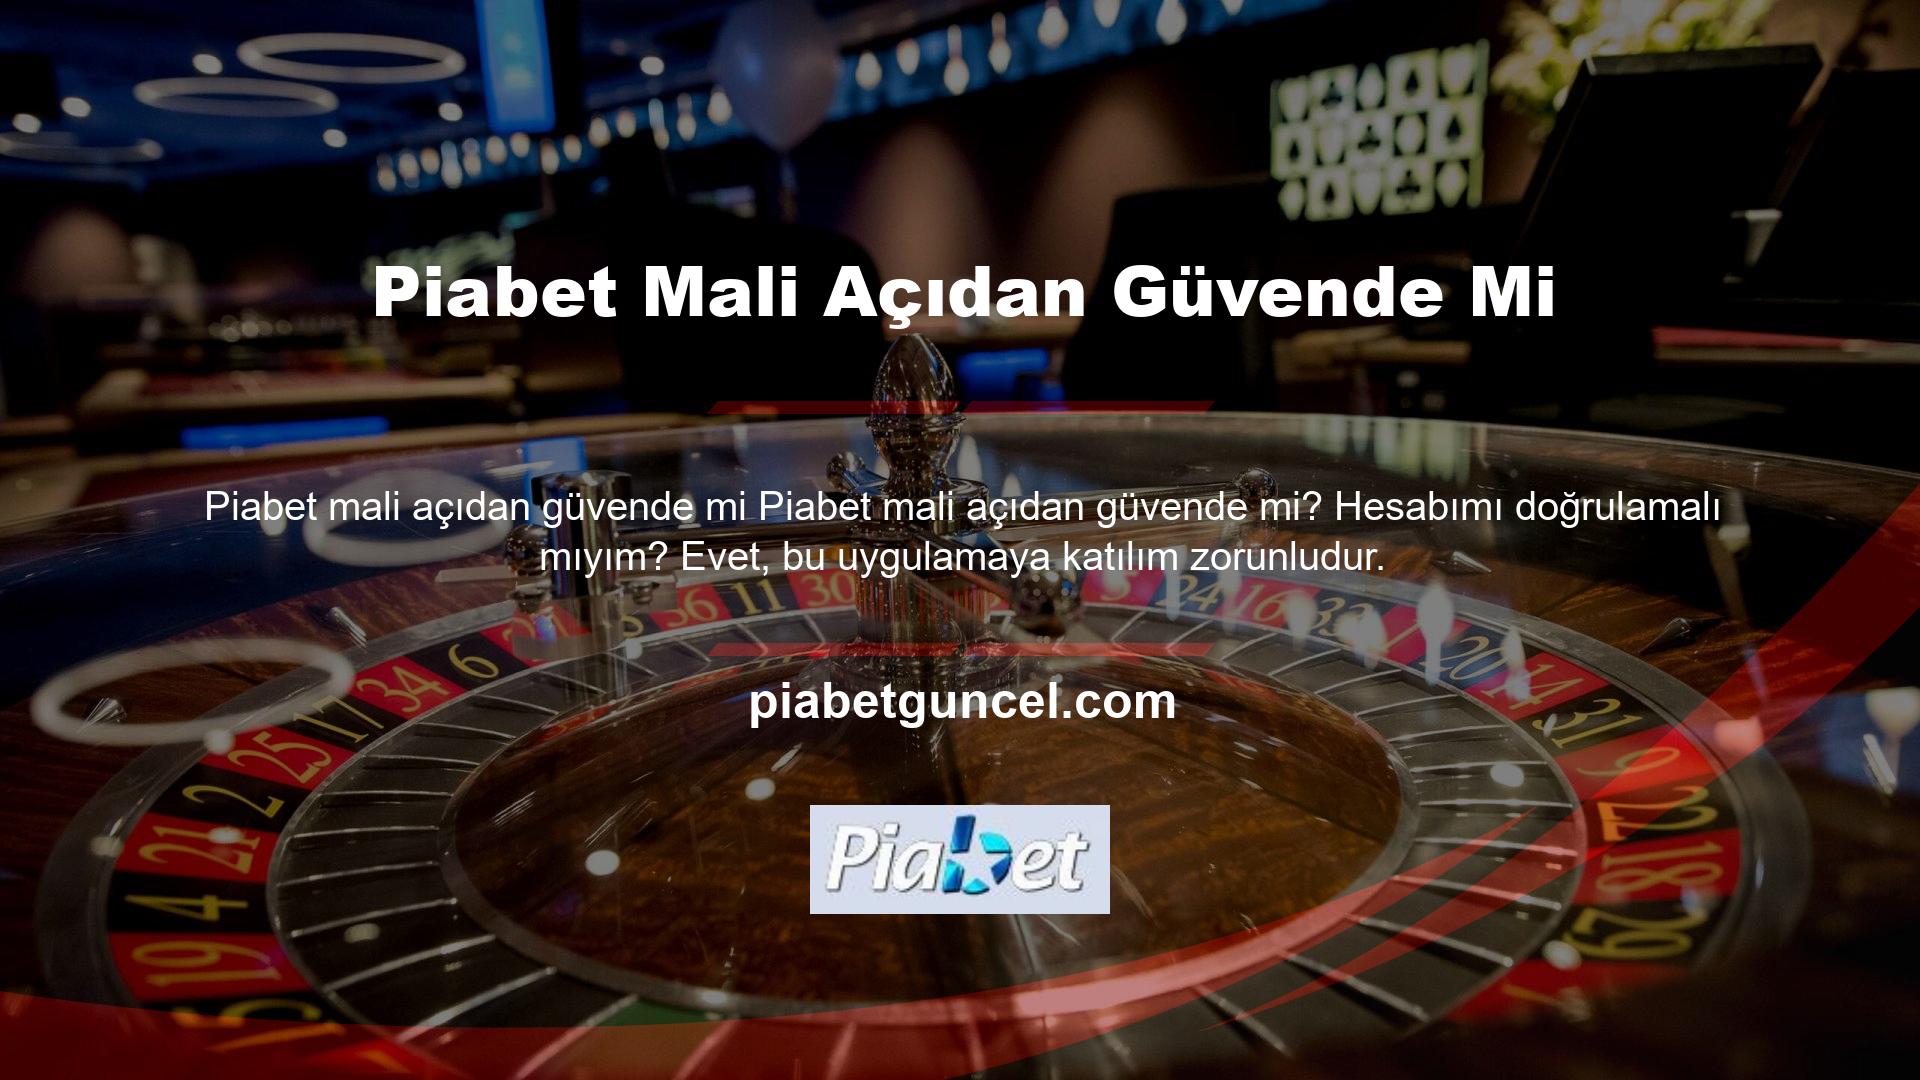 Piabet web sitesi, düzgün çalışan birkaç denizaşırı casino sitesinden biridir